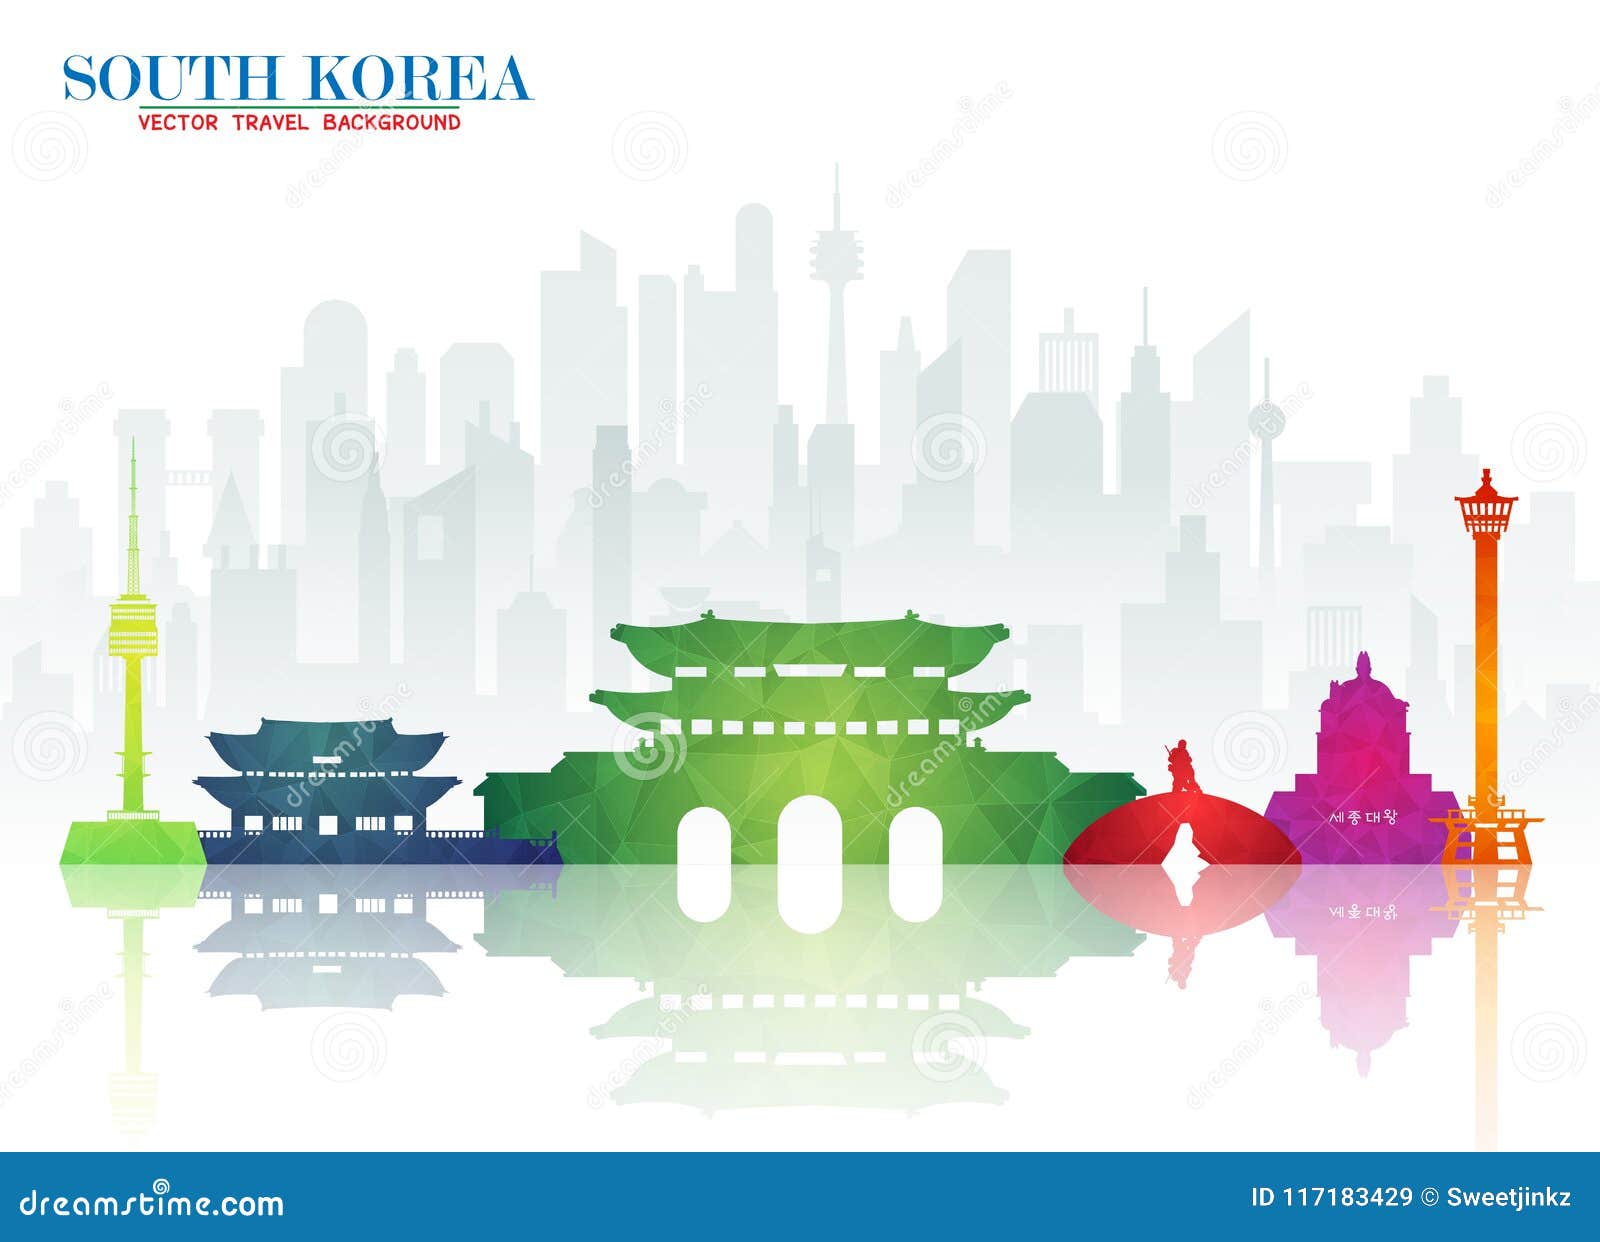 Điểm tham quan Hàn Quốc vô cùng phong phú và đa dạng. Từ những địa danh nổi tiếng như lâu đài Gyeongbokgung, đền Shilla, đến những điểm thưởng ngoạn như thị trấn Jeonju và làng Hahoe. Hãy trải nghiệm những phong cảnh đẹp và những trang web hấp dẫn khi đến với điểm tham quan Hàn Quốc.